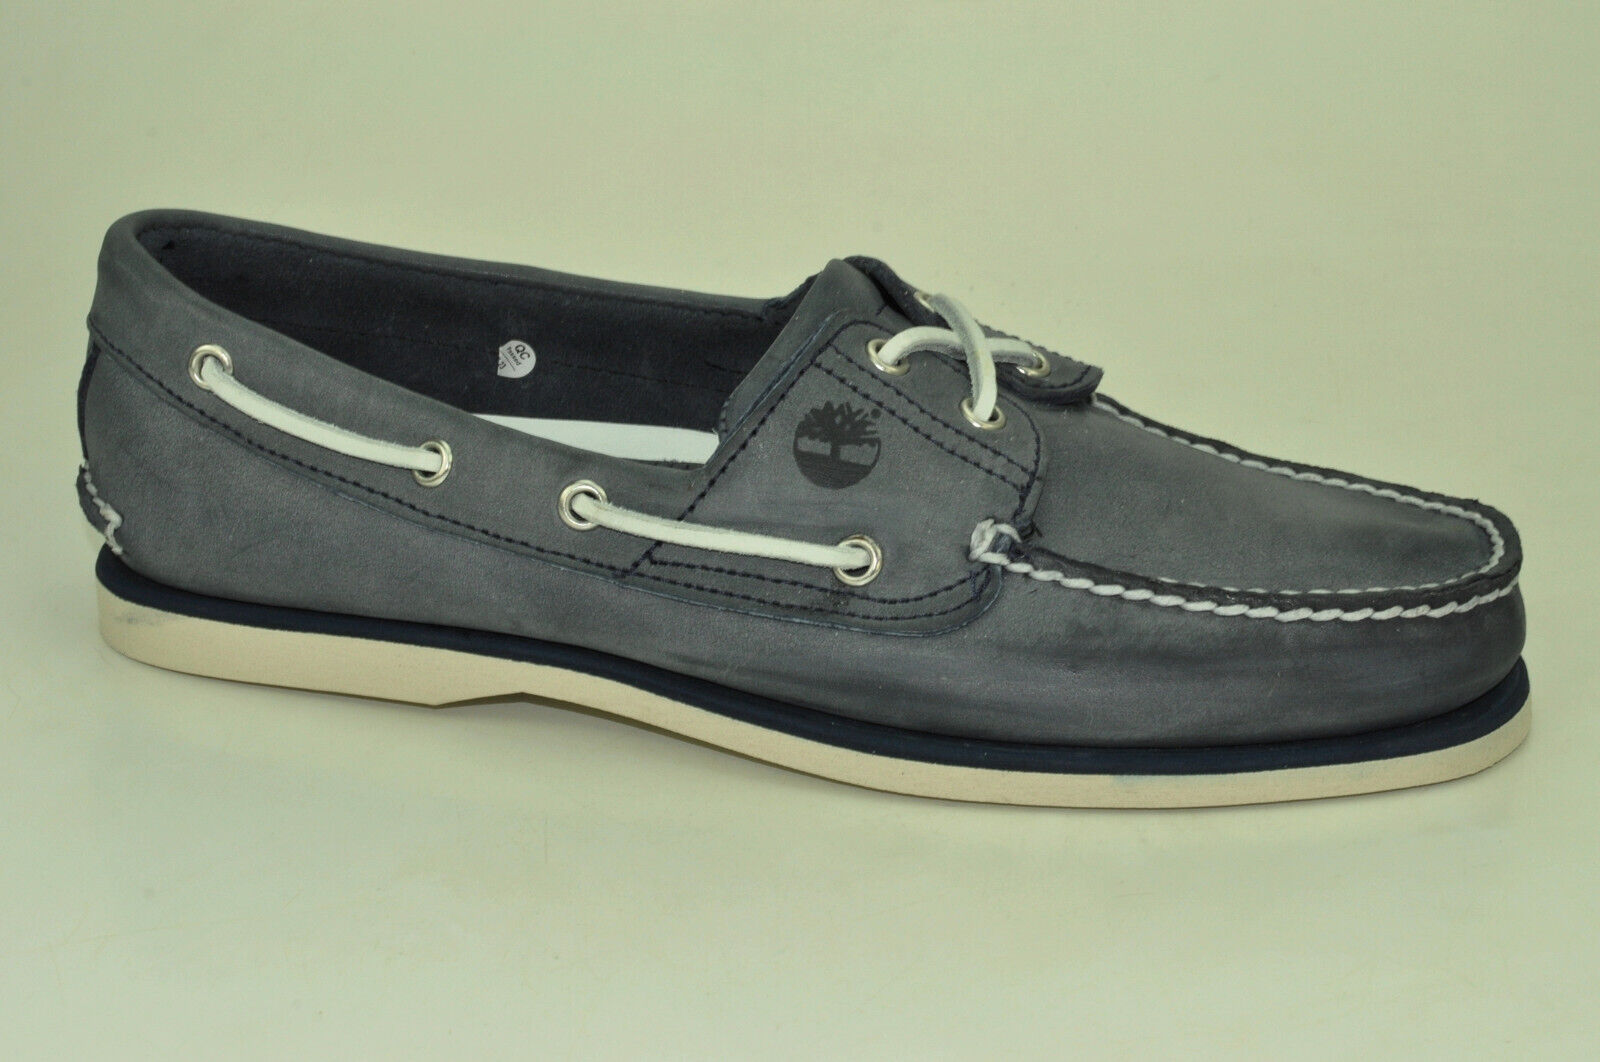 Timberland Segelschuhe Classic 2-Eye Boat Shoes Mokassin Deckschuhe Herren A13OM Schuhgröße EUR 44,5 US 10,5